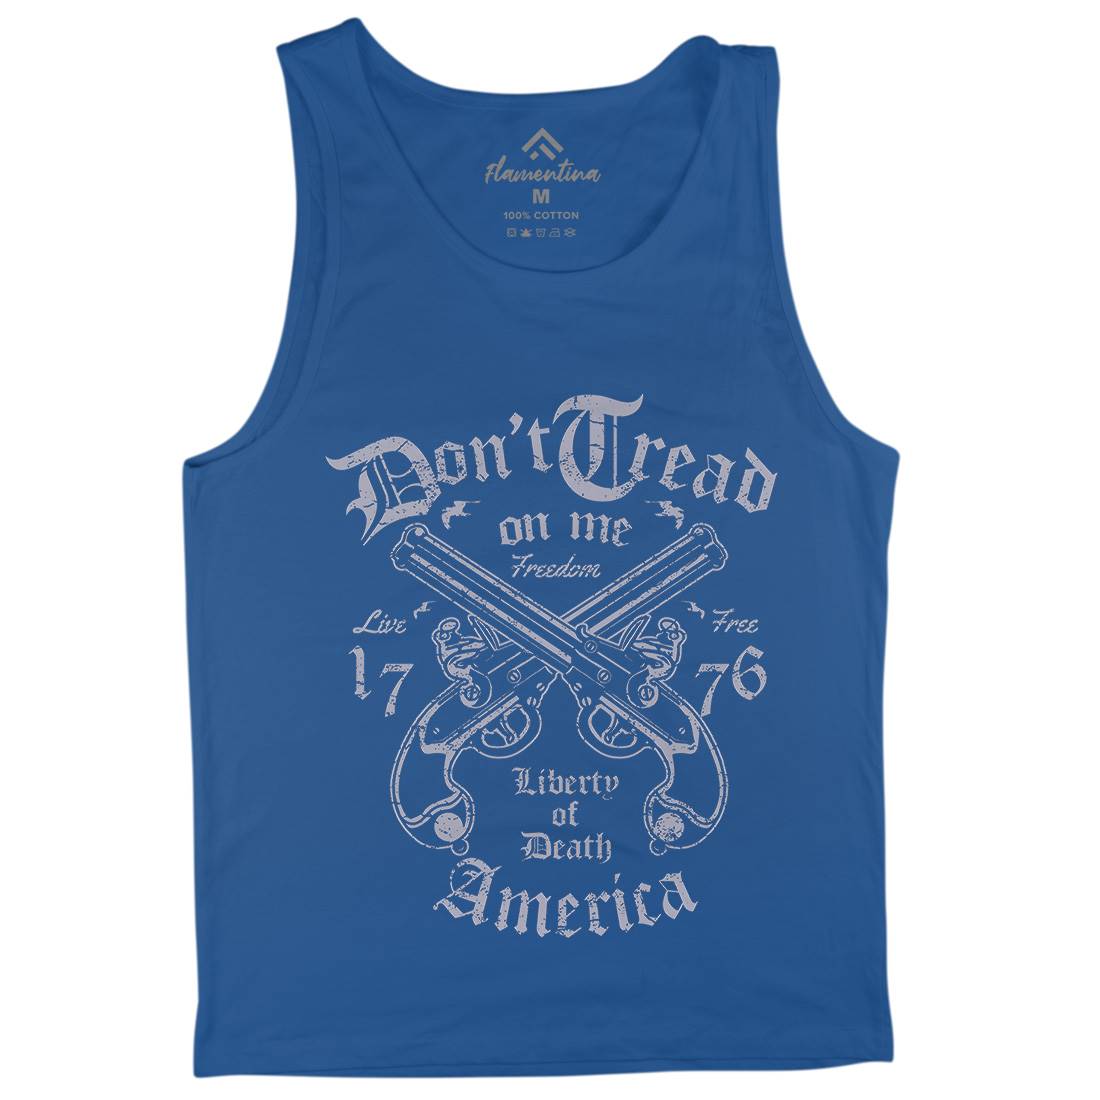 Liberty Of Death Mens Tank Top Vest American A084